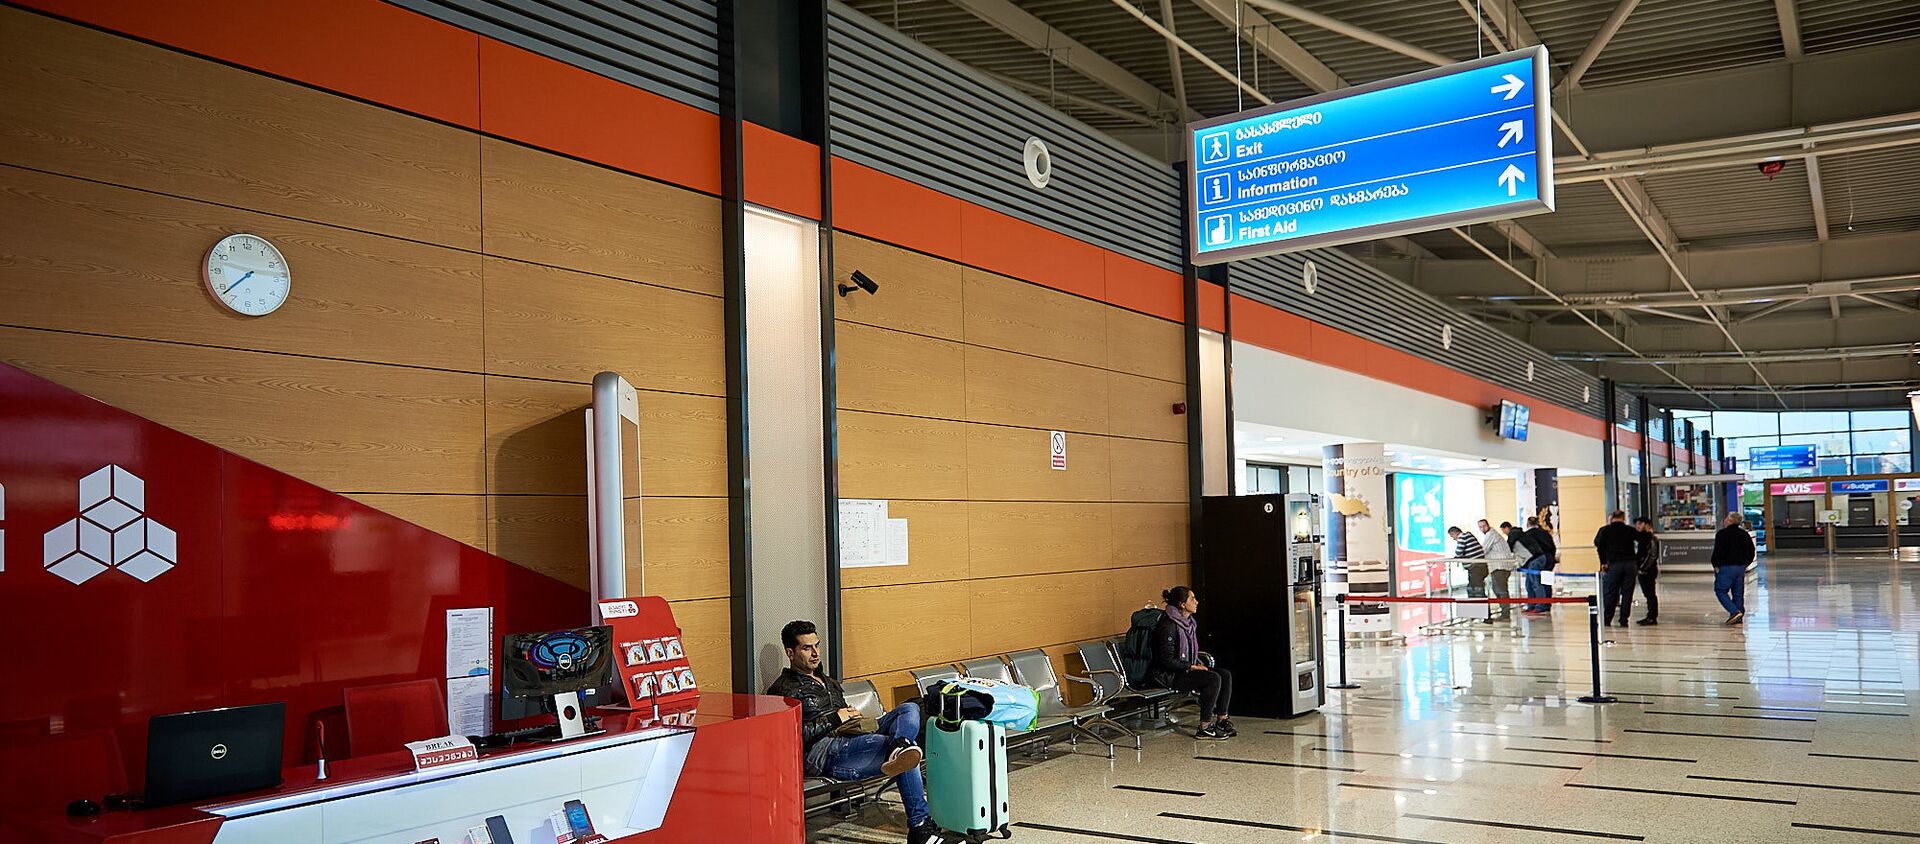 Тбилисский международный аэропорт - терминал прибытия и ожидающие - Sputnik Грузия, 1920, 01.02.2021